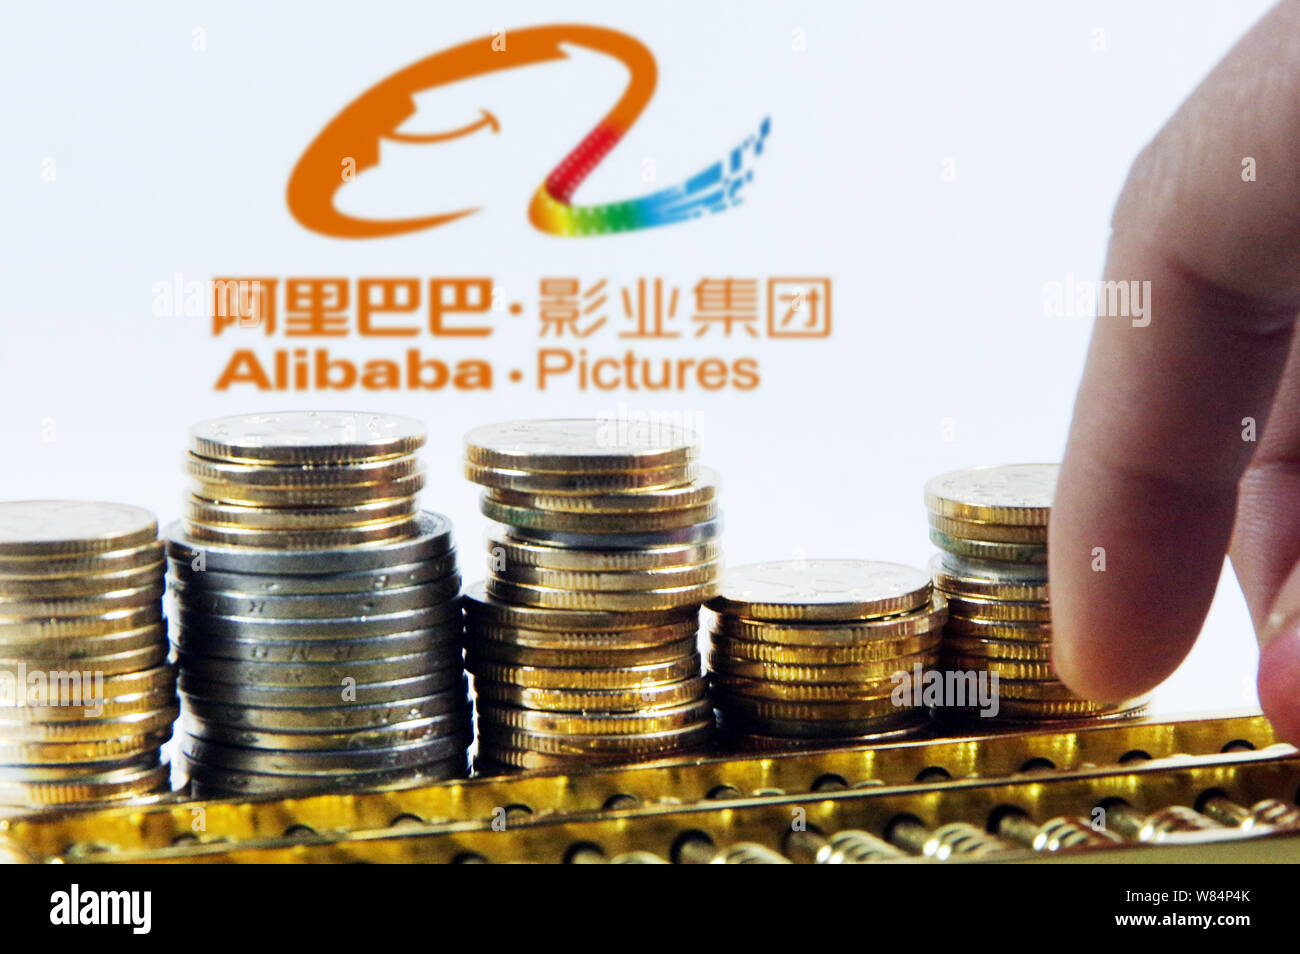 --FILE--Illustration d'Alibaba photos, un film de l'entreprise e-commerce chinois Alibaba Group géant. Jack Ma, le magnat de l'internet, s'associe wi Banque D'Images